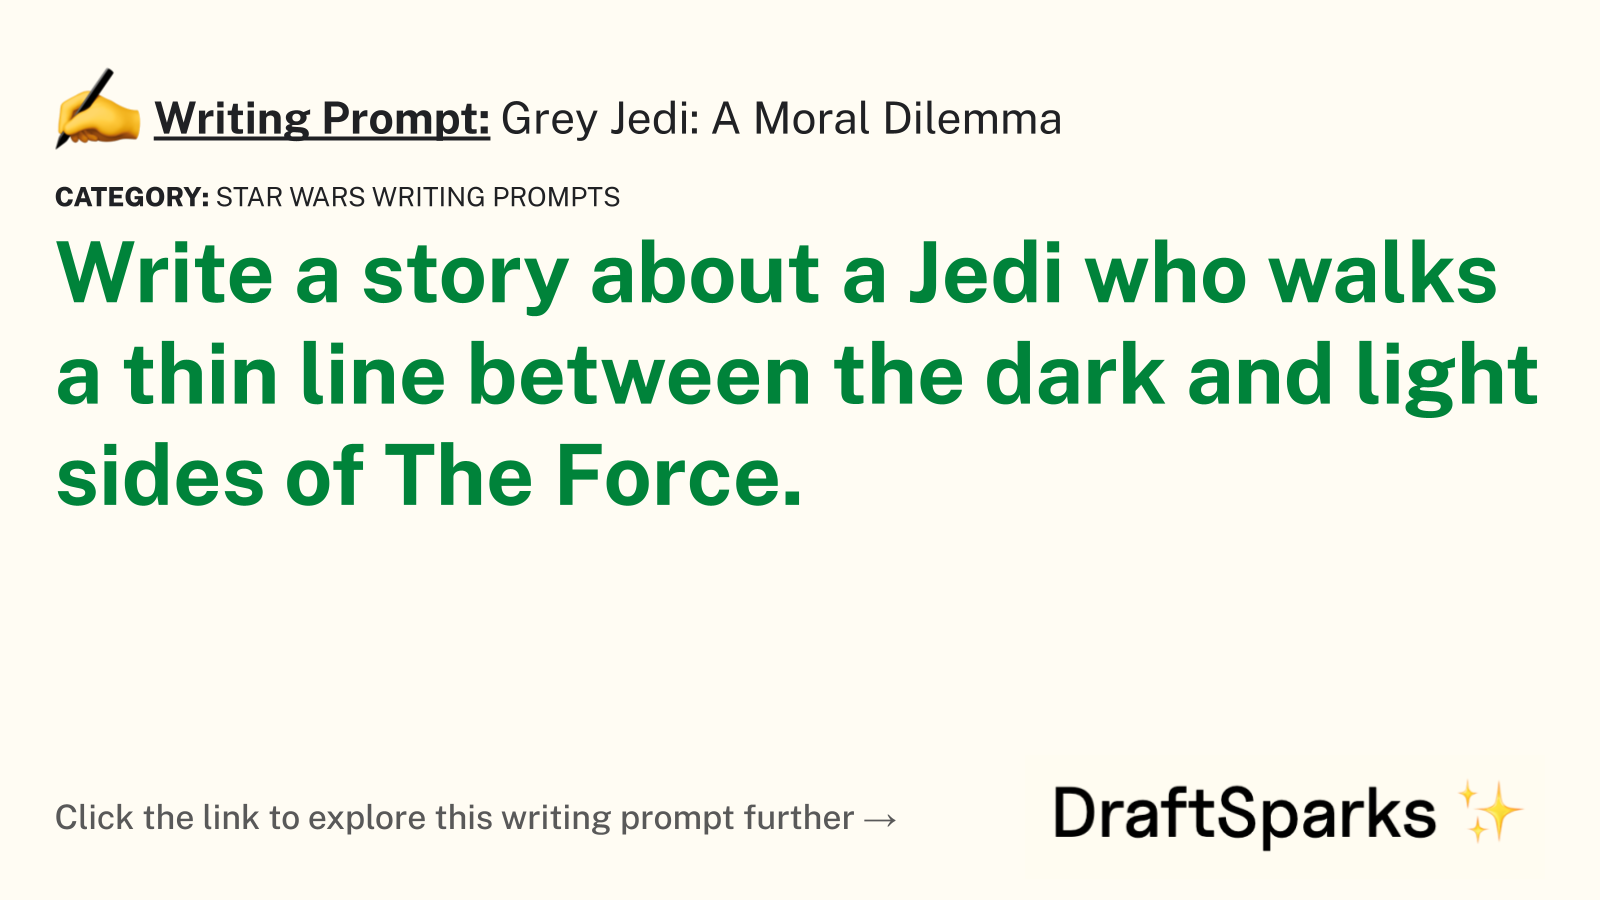 Grey Jedi: A Moral Dilemma